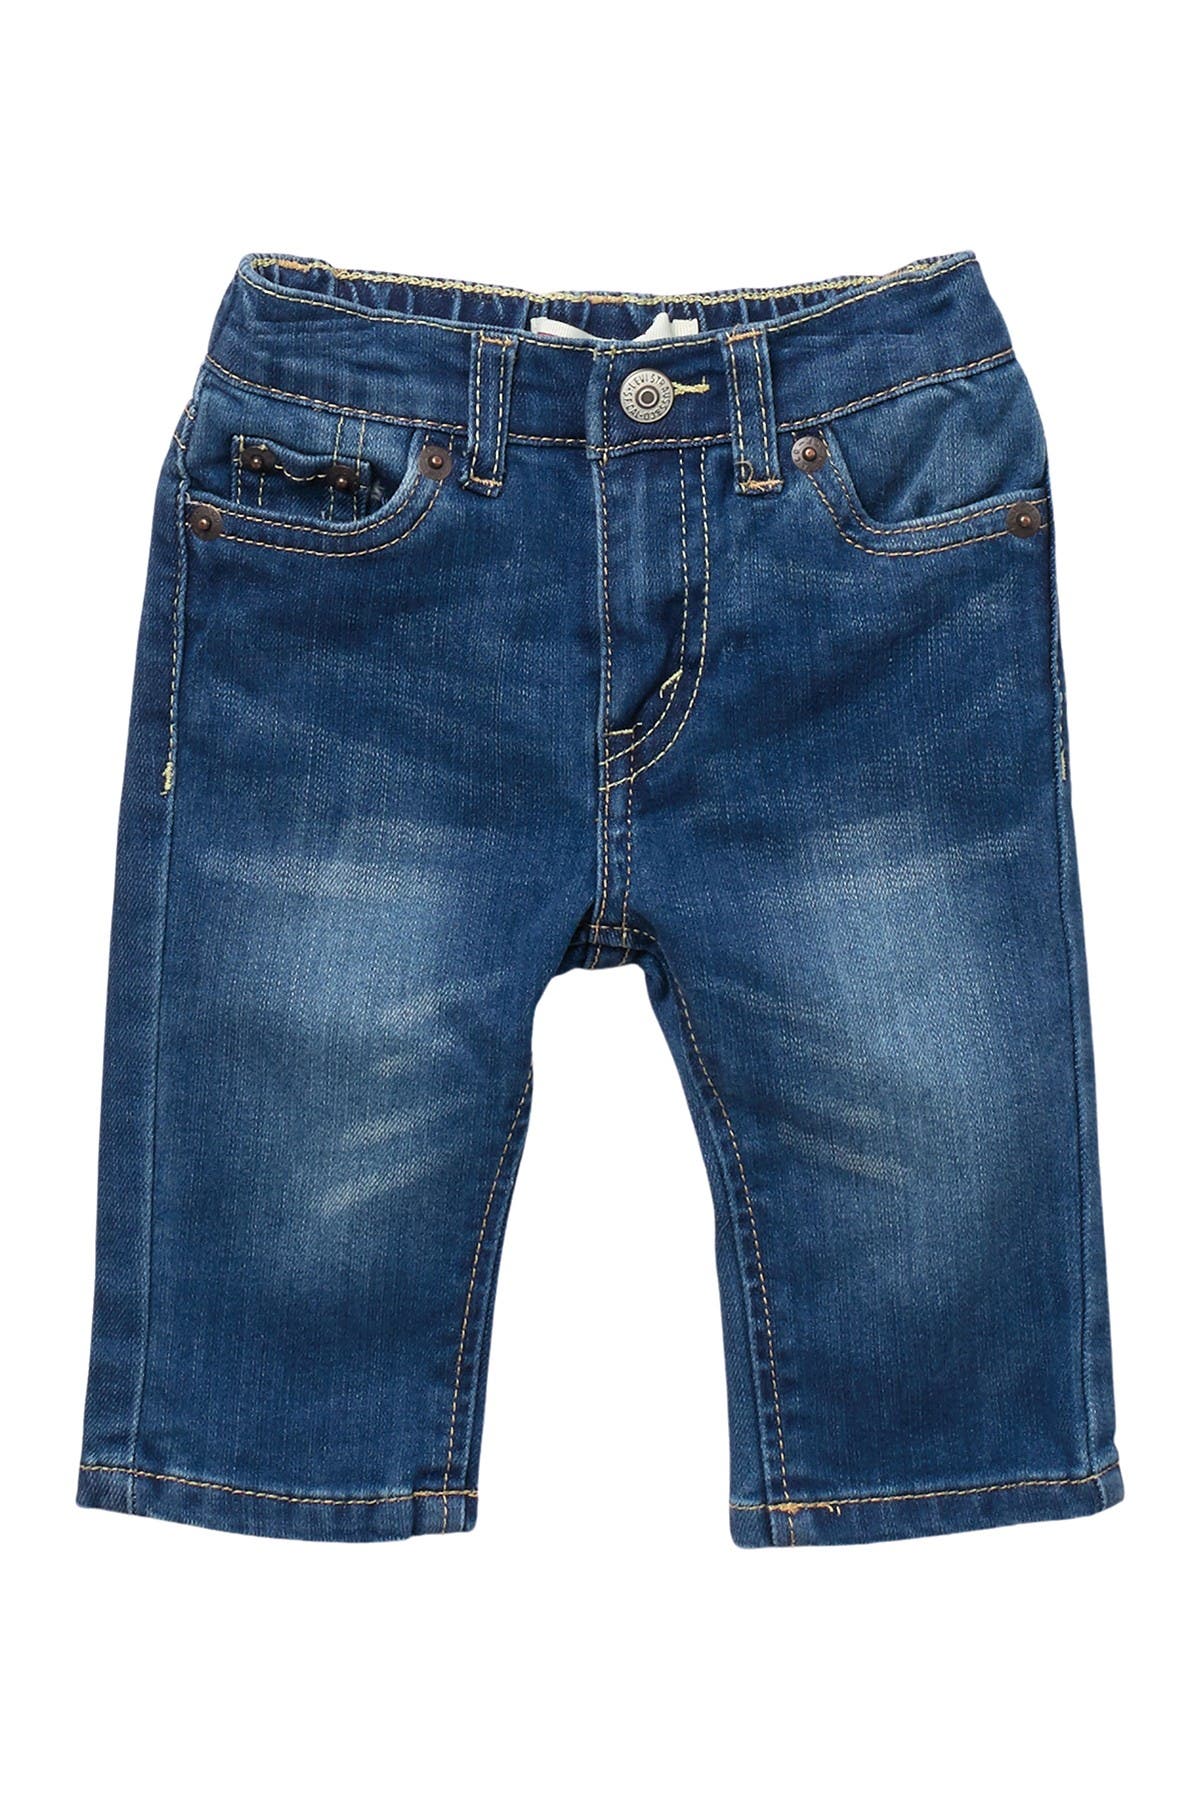 levi's comfort jeans